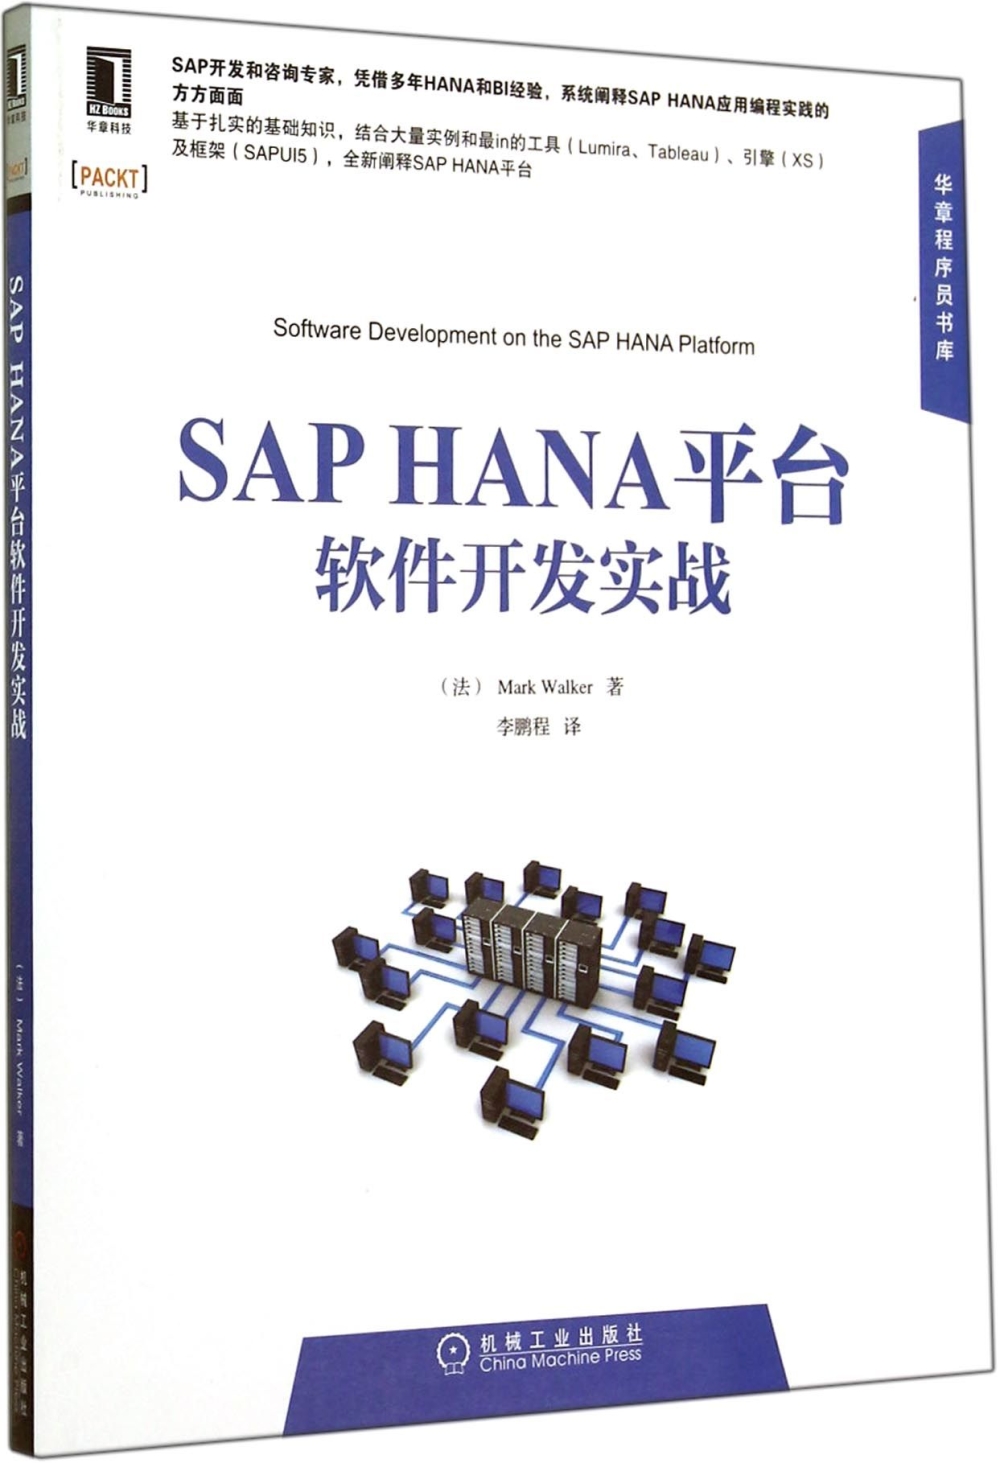 SAP HANA平台軟件開發實戰